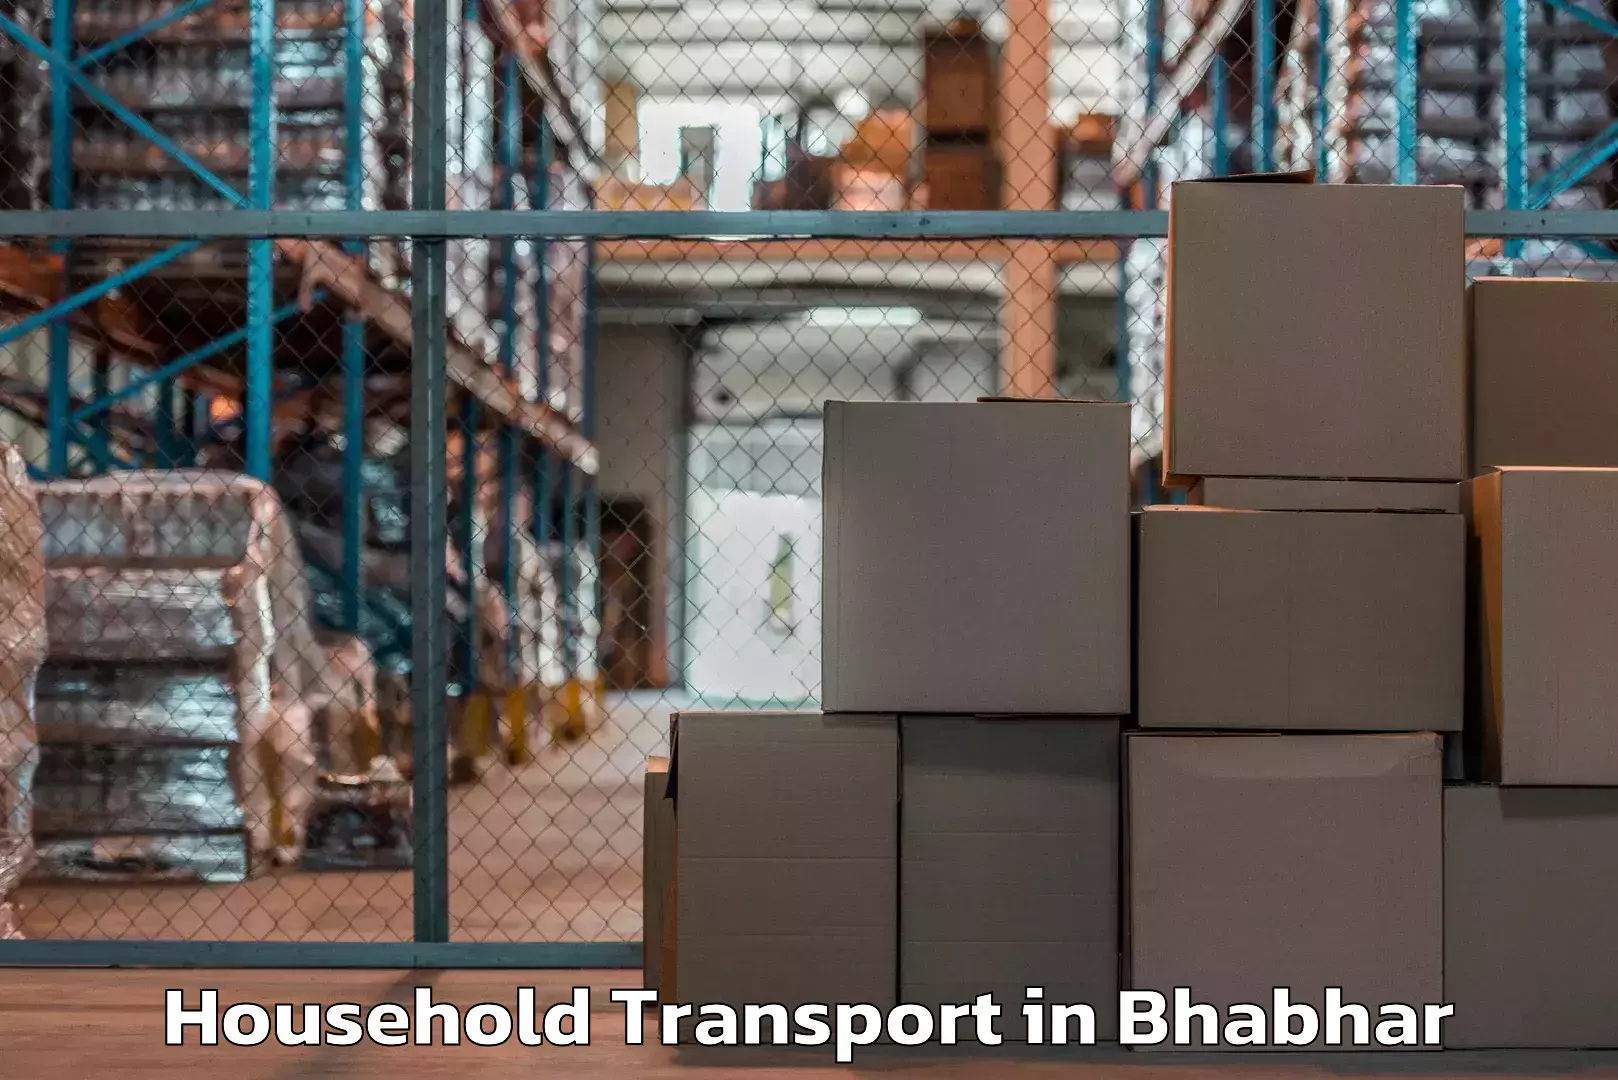 Household goods transporters in Bhabhar